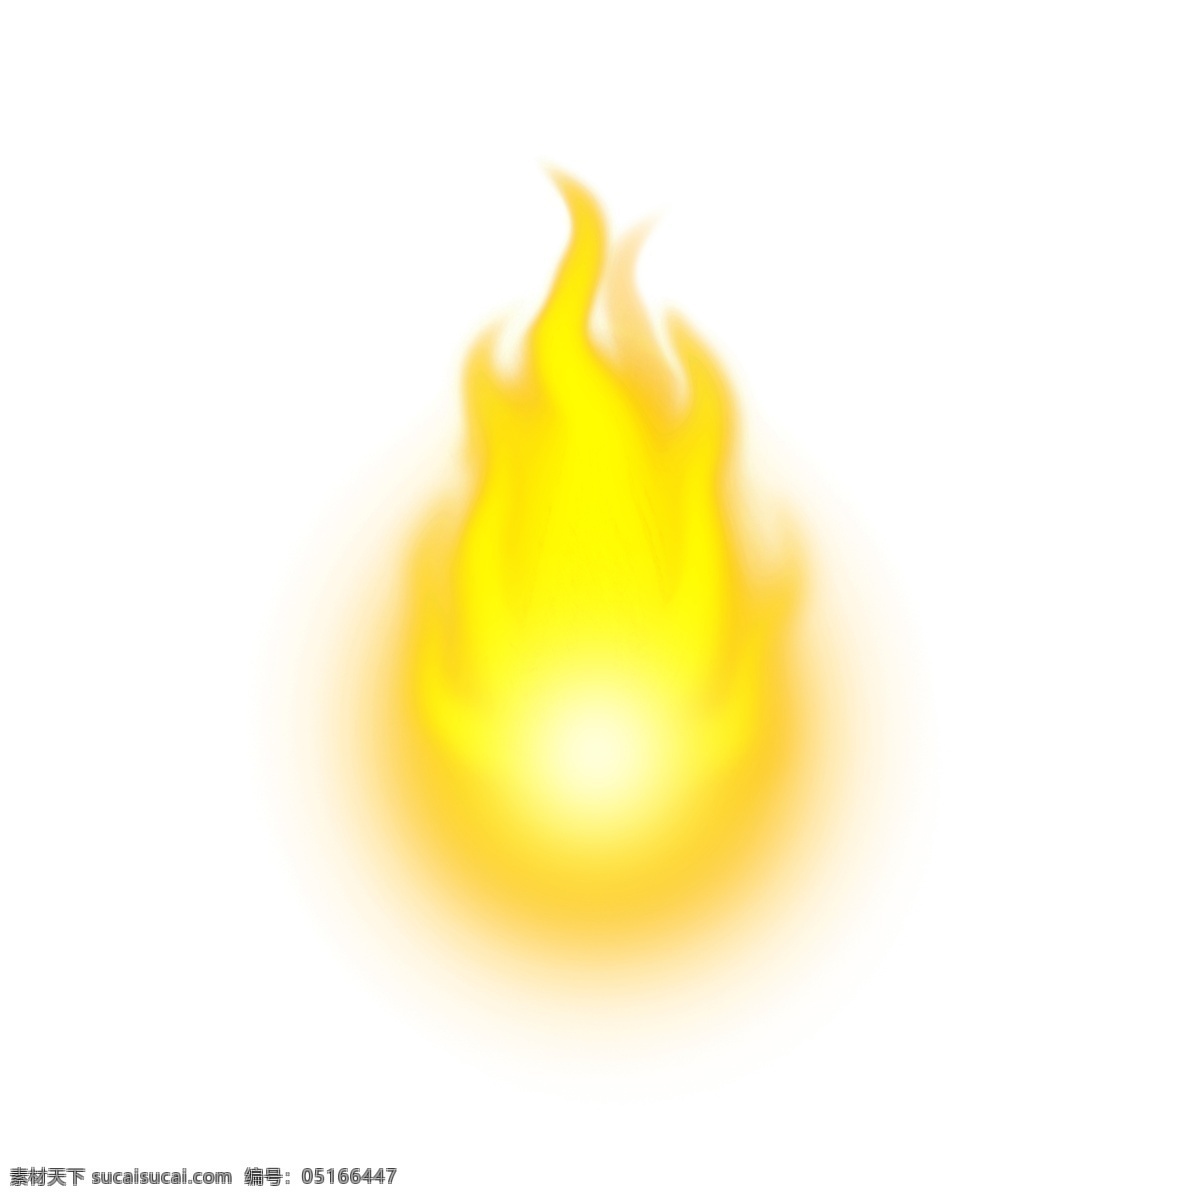 黄色 燃烧 火苗 火光 元素 烈火 蜡烛火苗 火焰特效 燃烧的火焰 黄色火焰 火星 火把 热气 朦胧